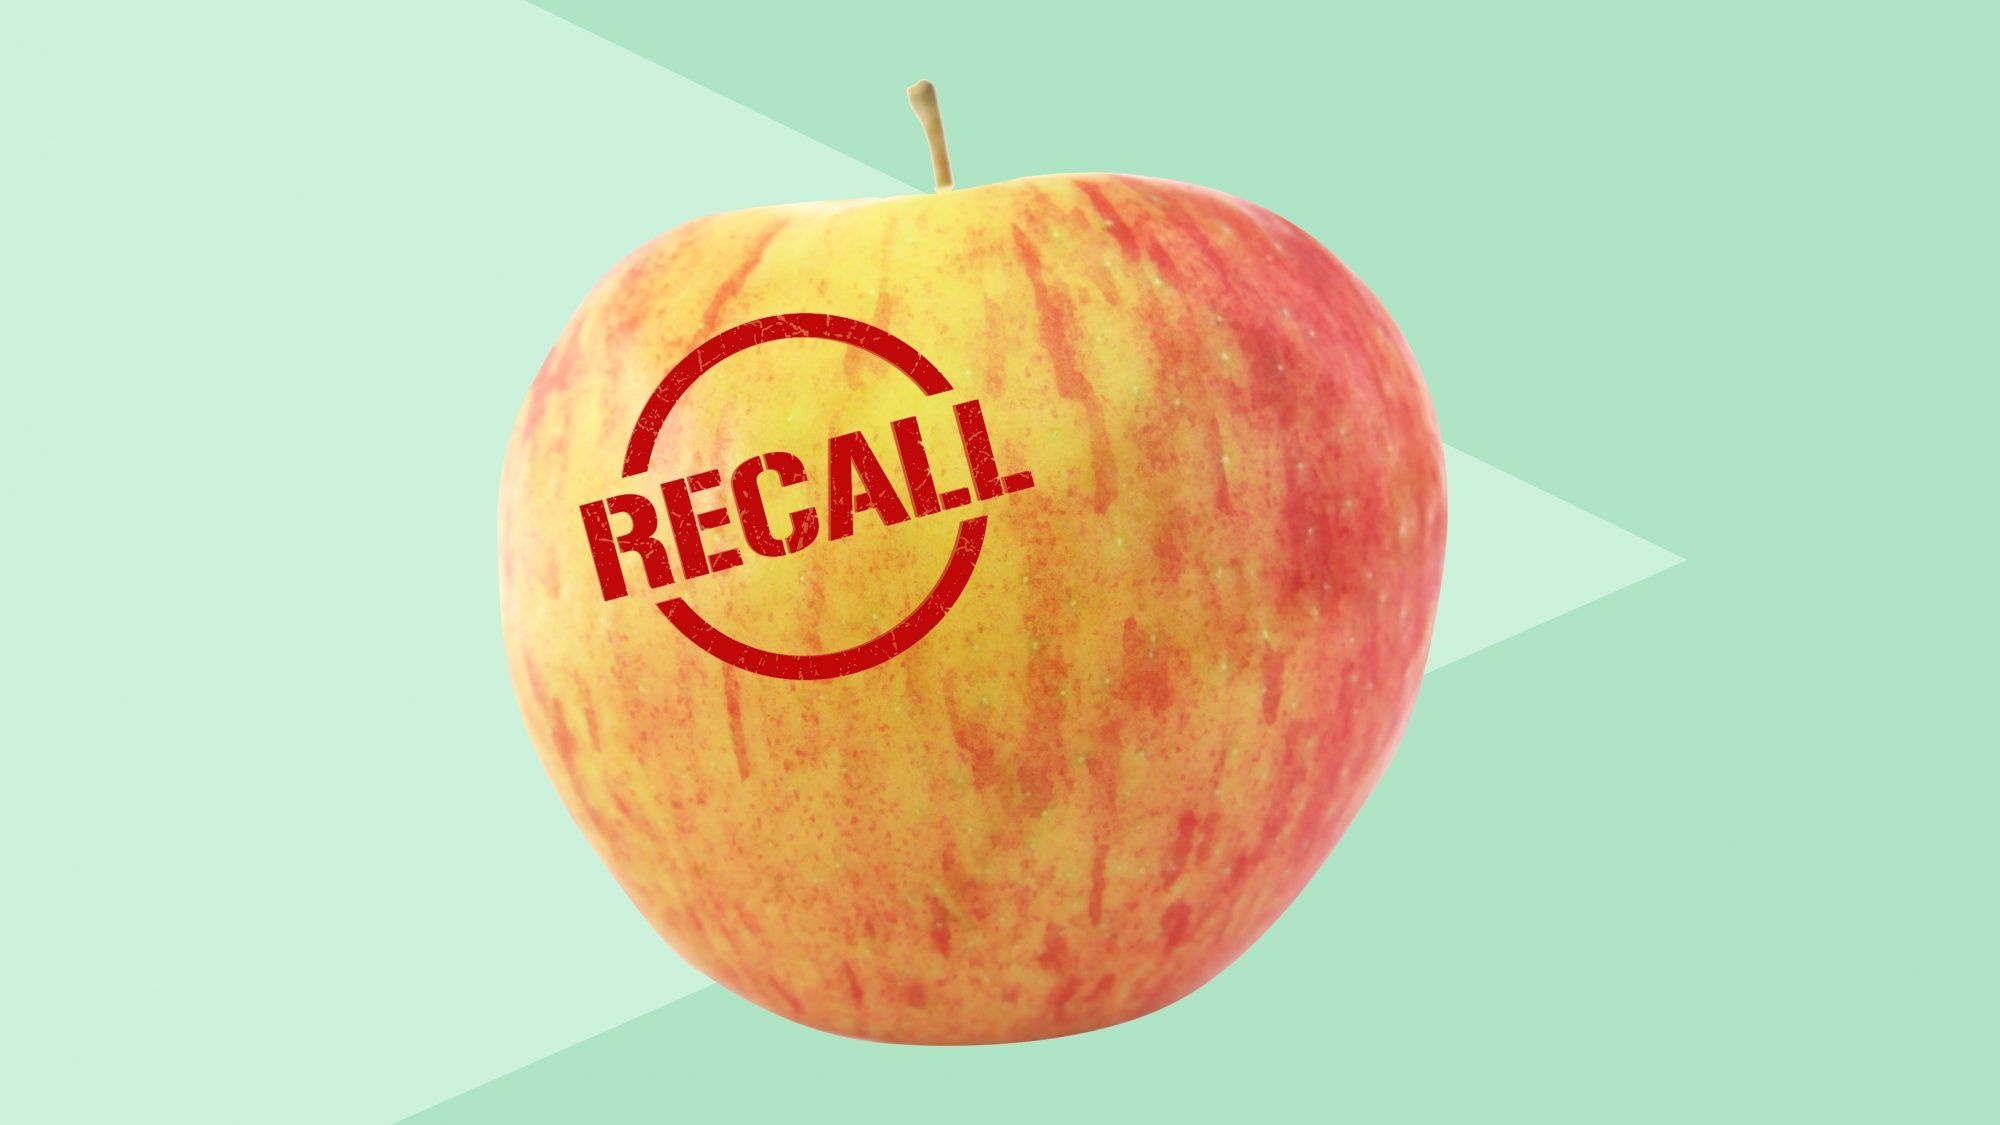 6 populárnych odrôd jabĺk sa pripomína kvôli potenciálnej kontaminácii listériami - tu by ste mali vedieť